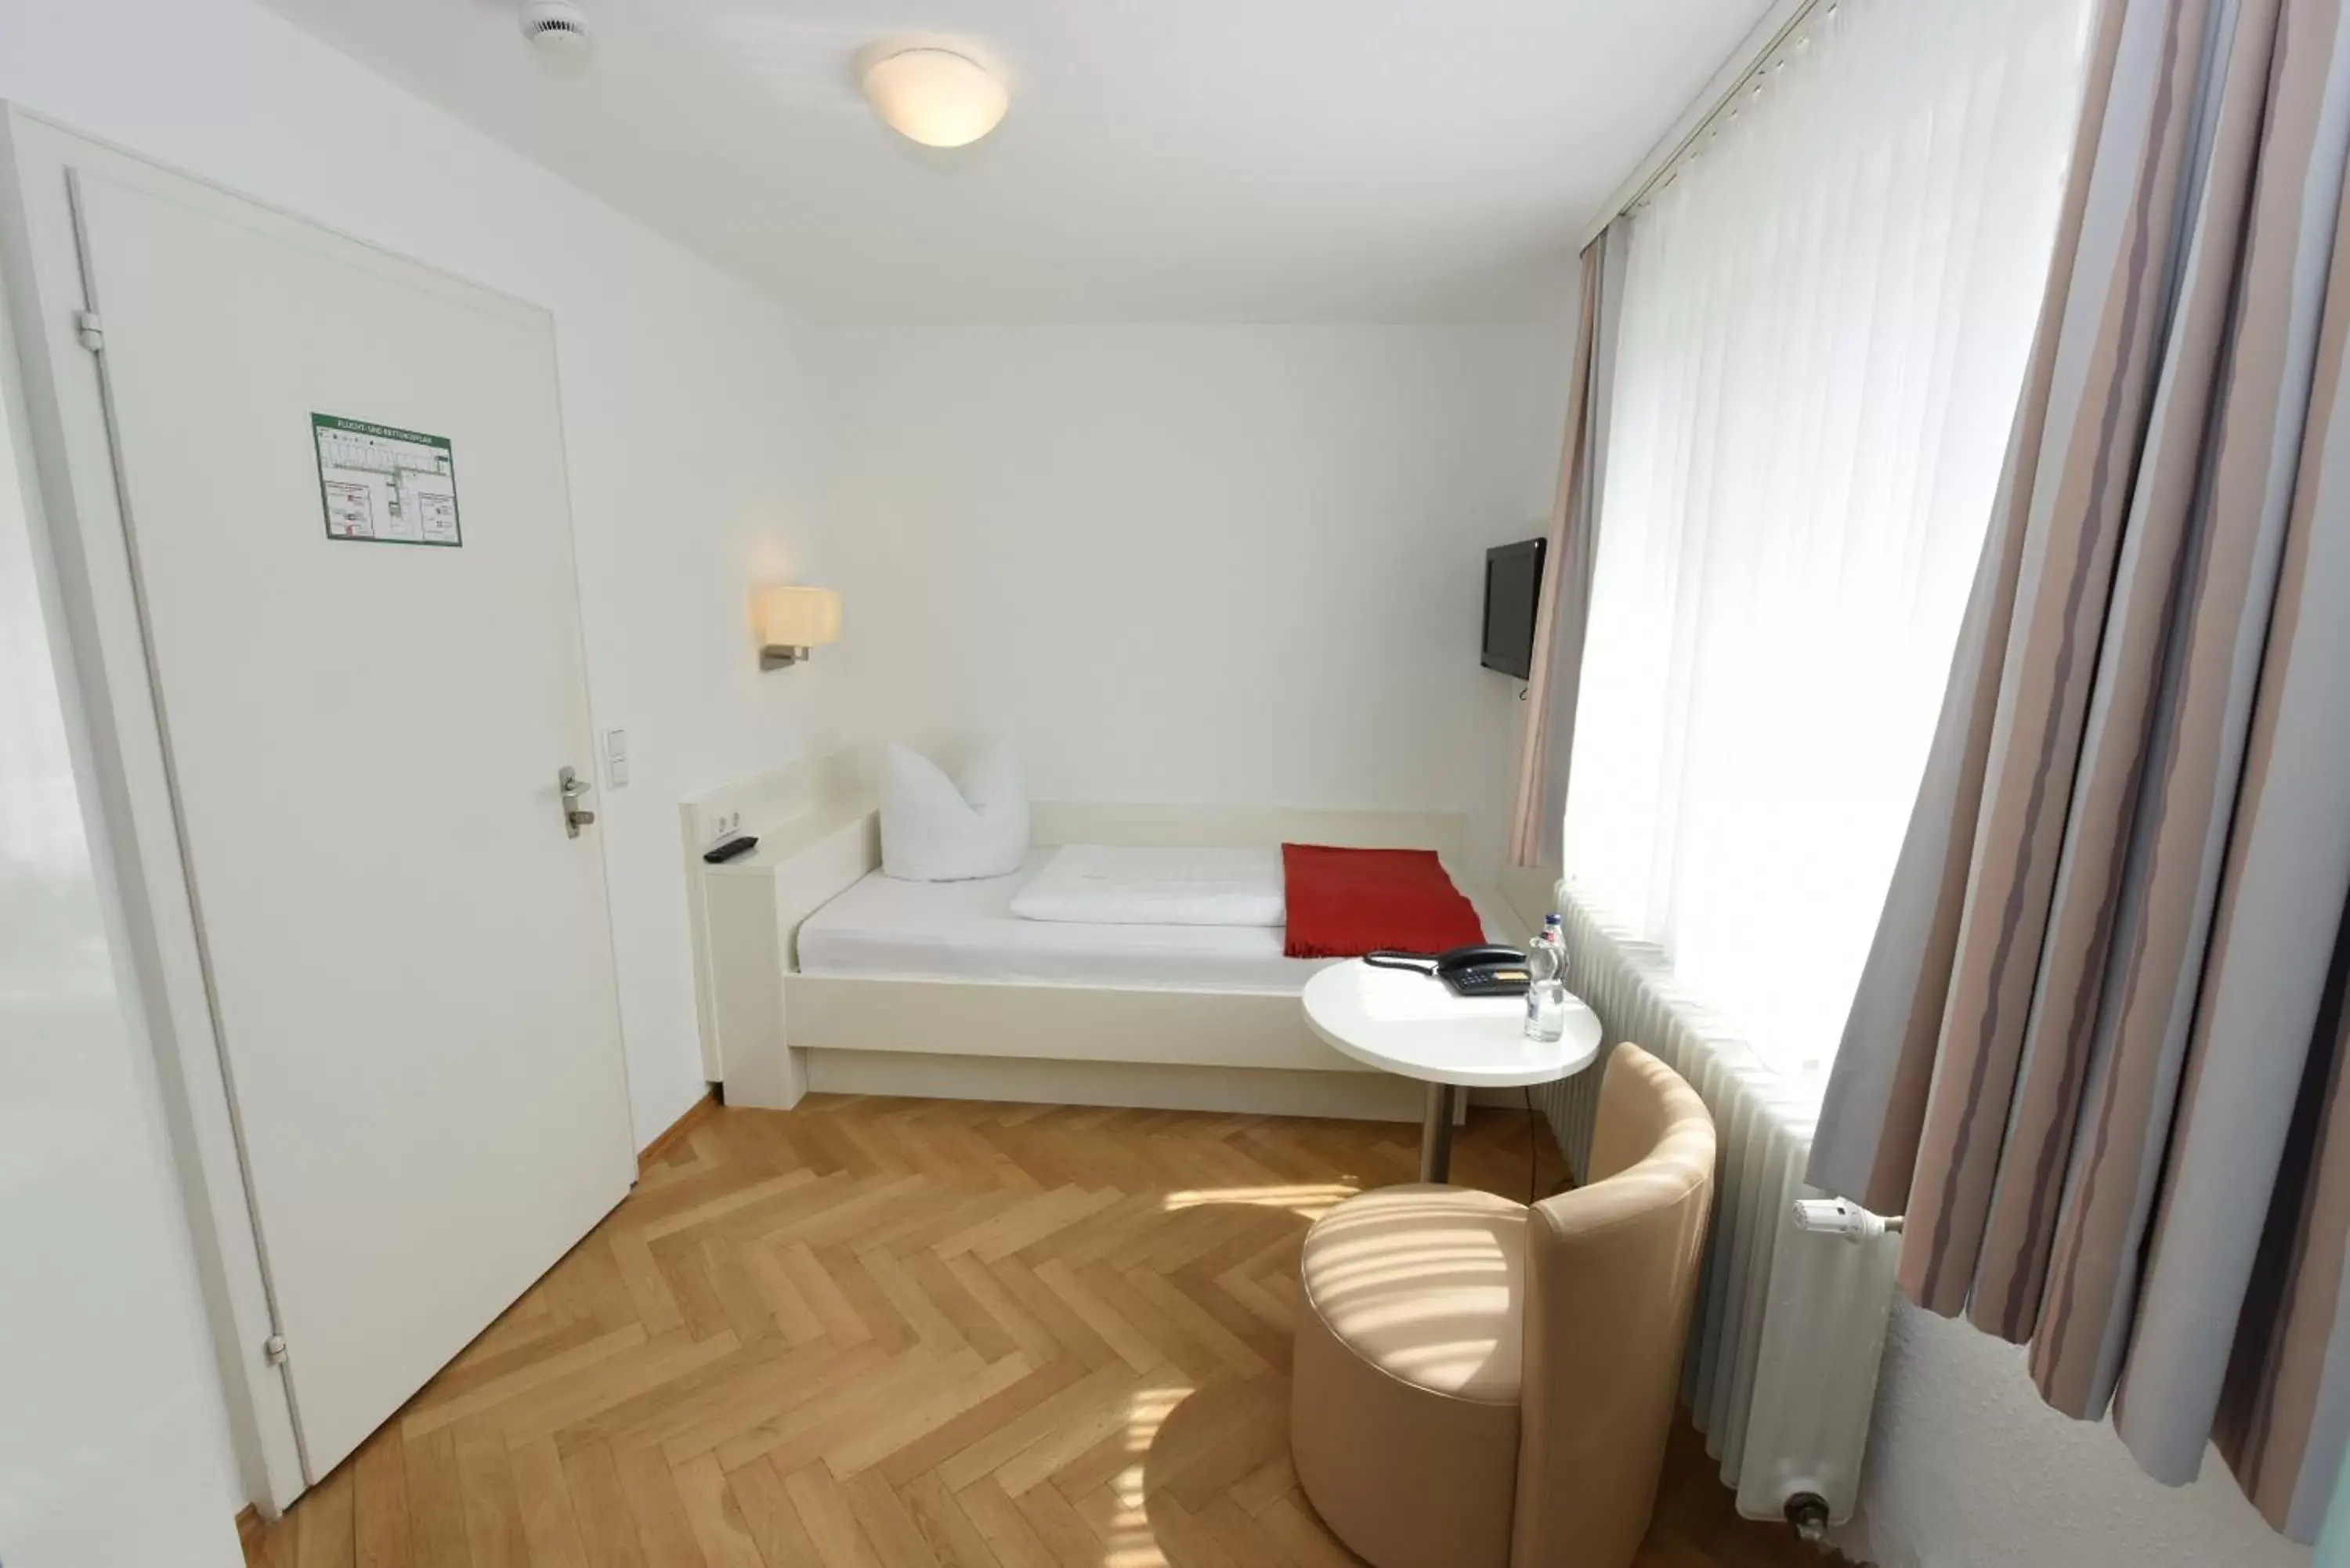 Bed, Room Photo in Badischer Landgasthof Hirsch